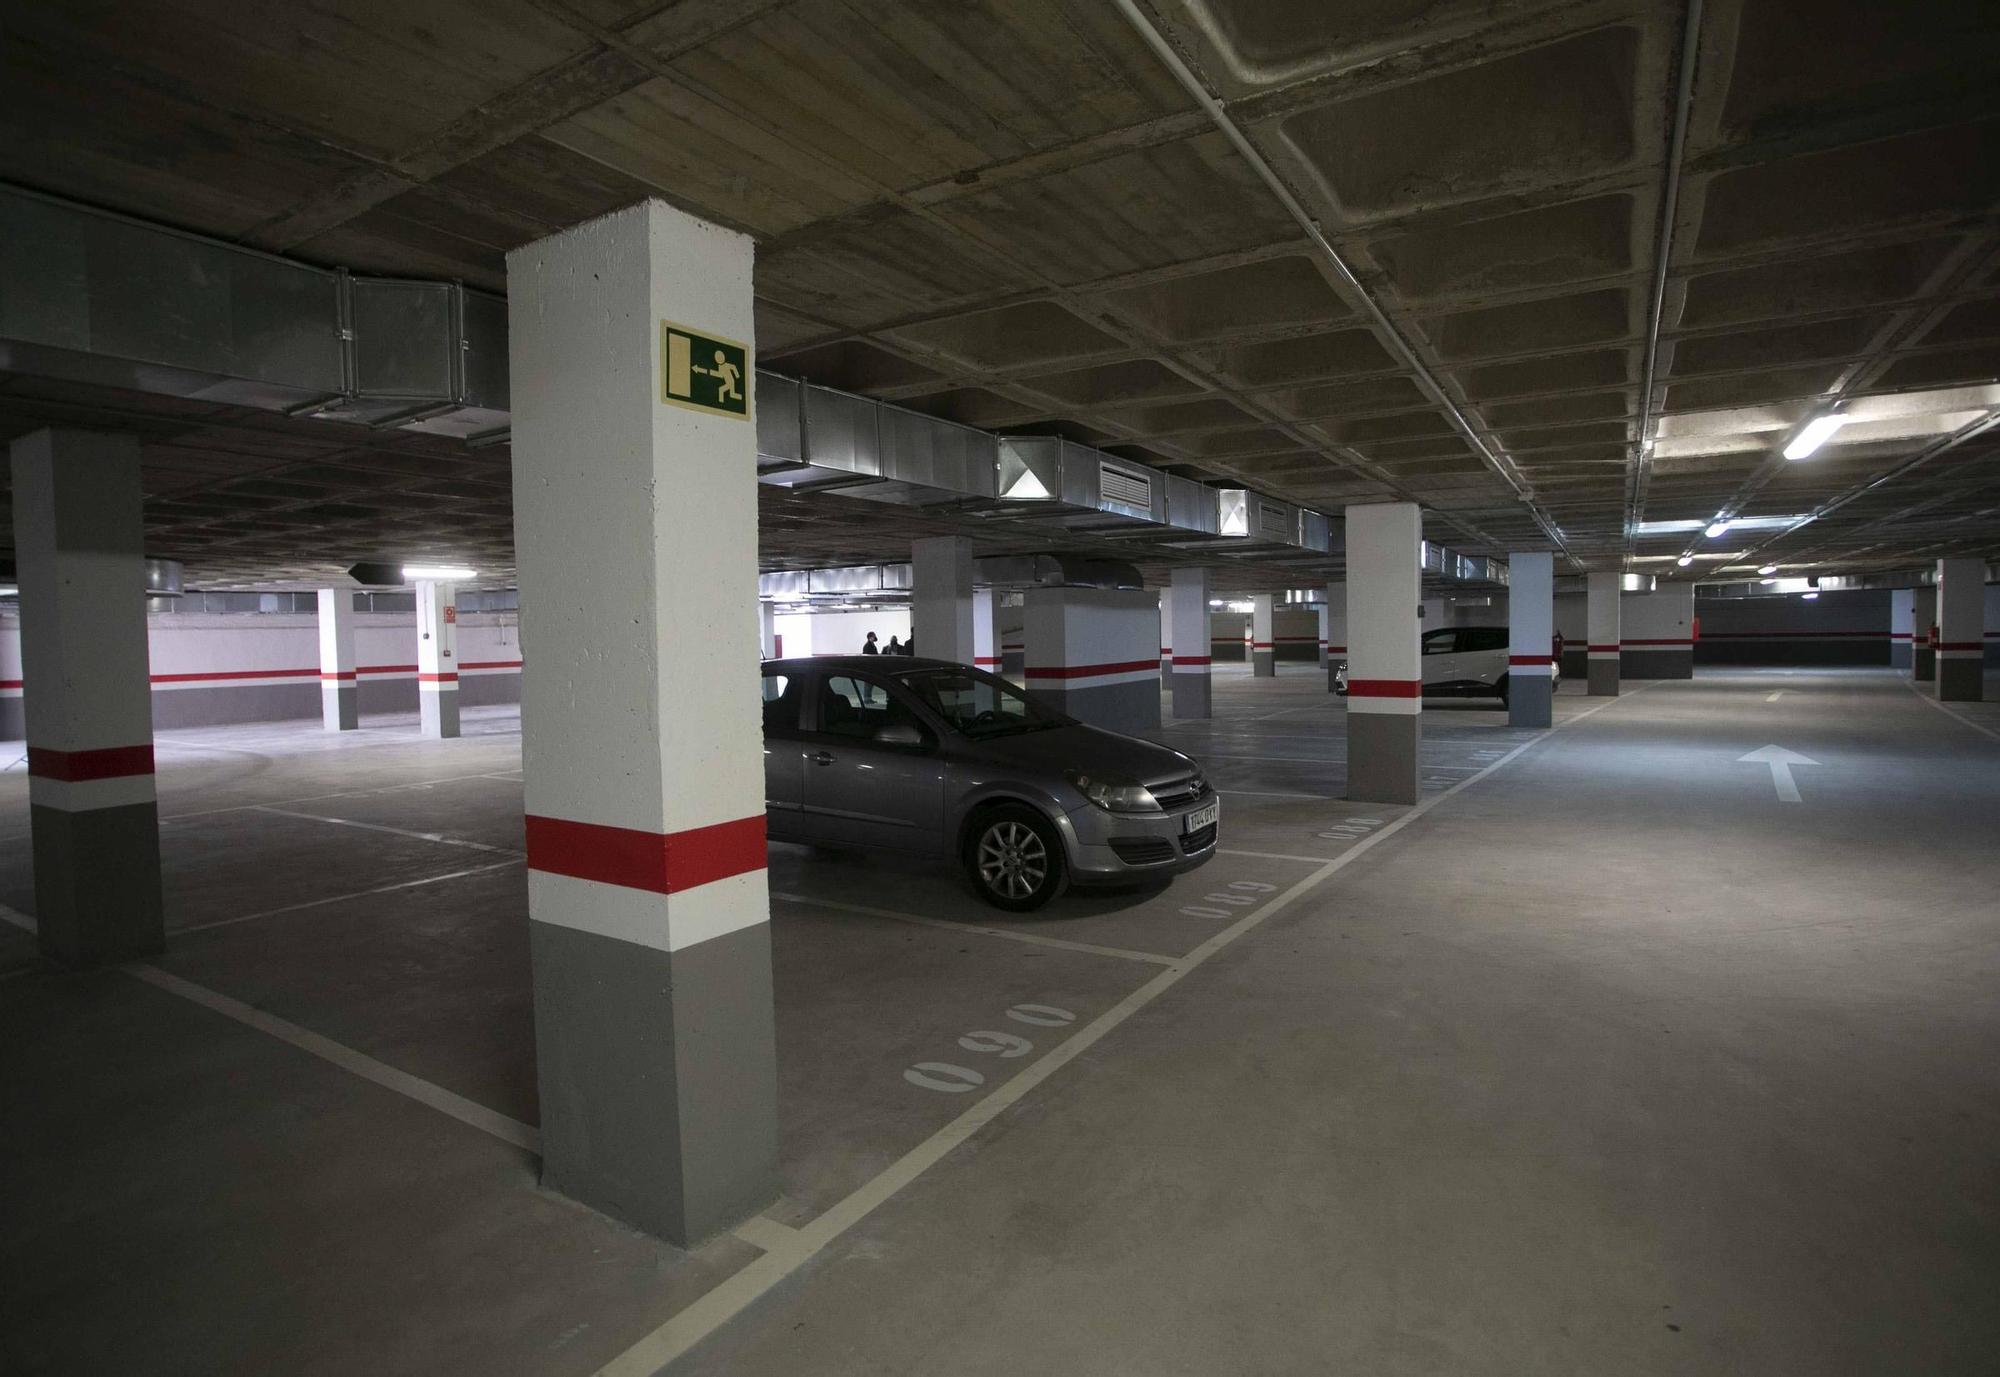 Así es el nuevo parking de Sagunto, que ha tenido que esperar 9 años.